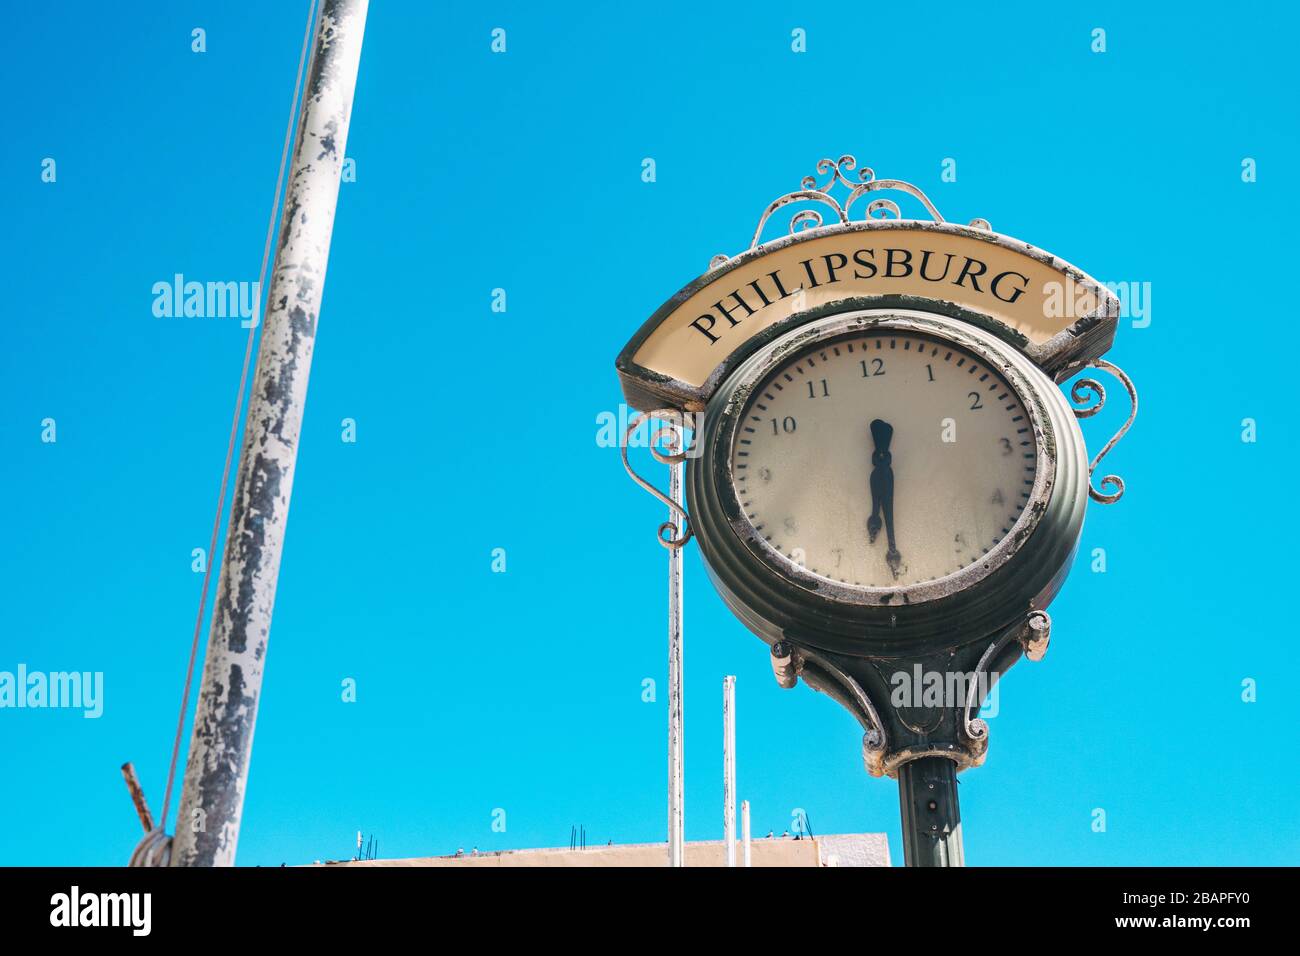 Eine zerbrochene öffentliche Uhr mit dem Wort "Philipsburg" darüber, in der Hauptstadt Sint Maarten, karibische Niederlande Stockfoto